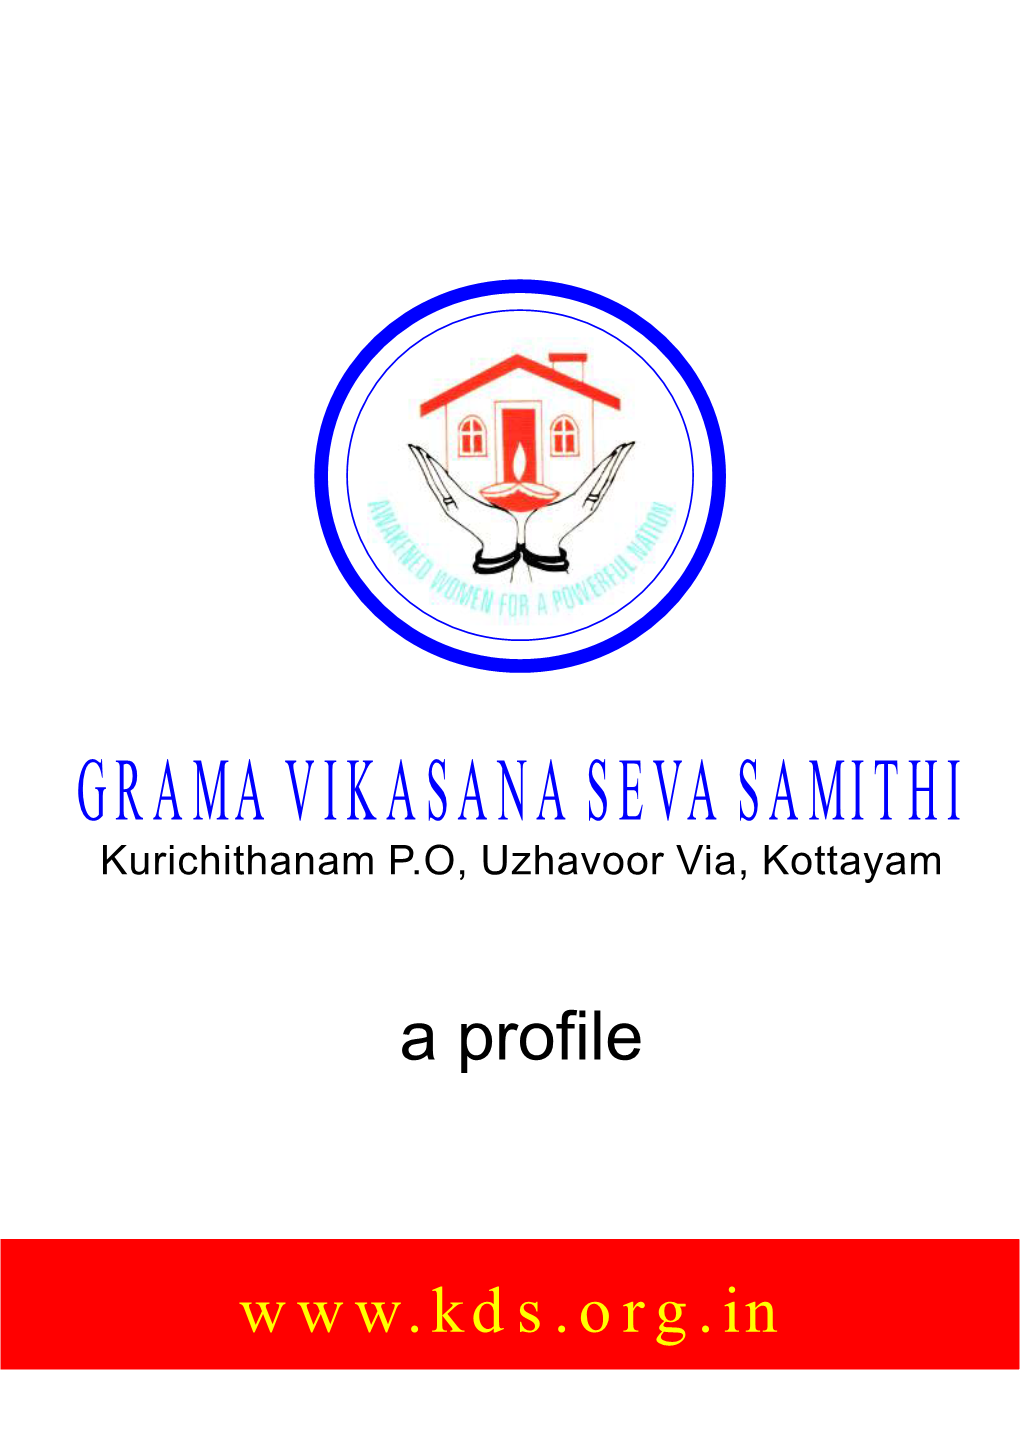 Grama Vikasana Seva Samithi in 1994